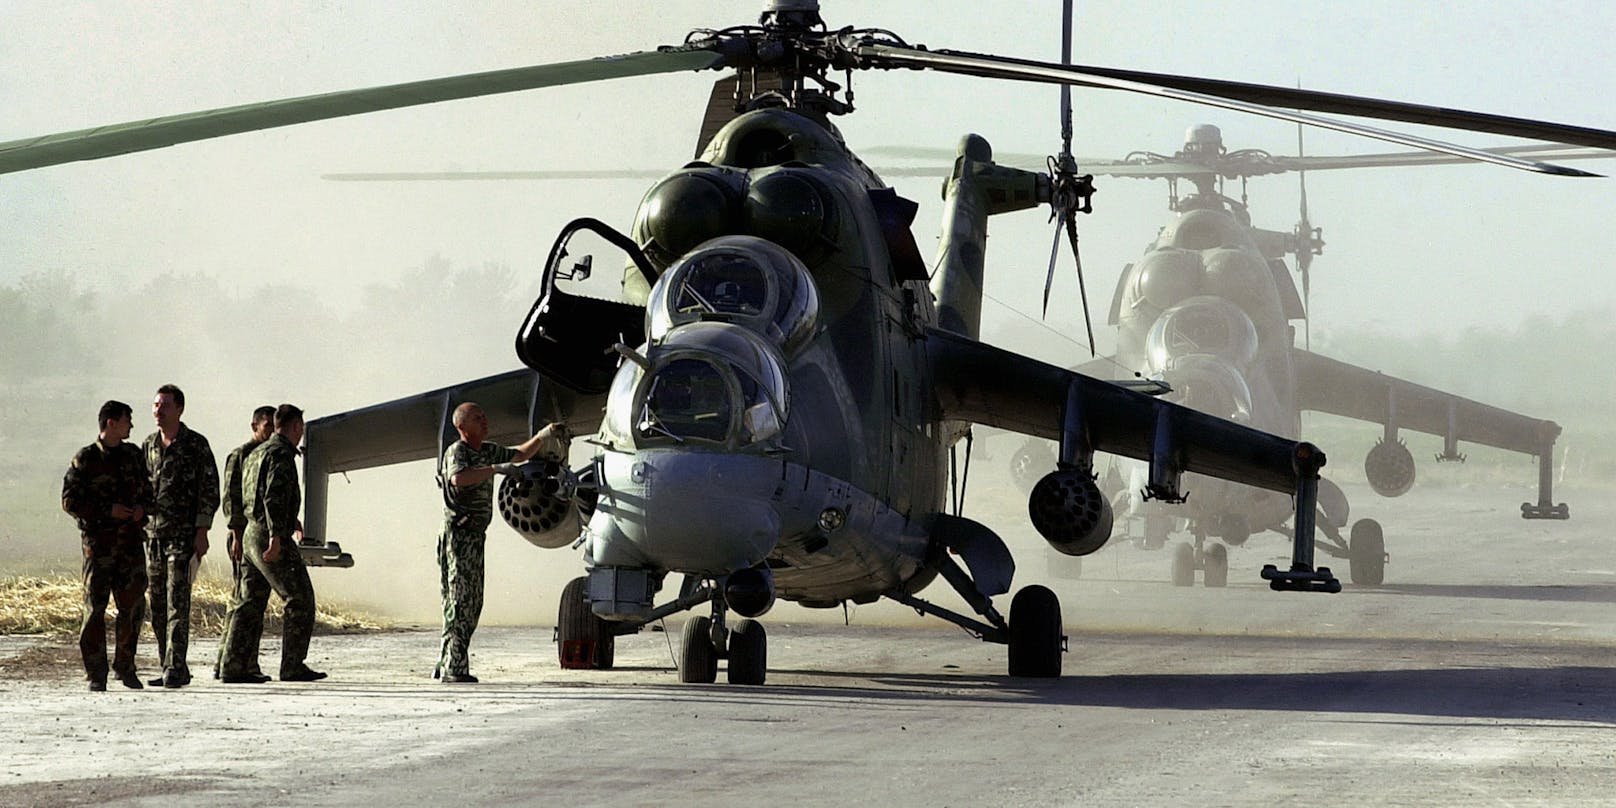 Am Montag wurde ein Militärhubschrauber des Typs Mi-24 abgeschossen. Symbolbild